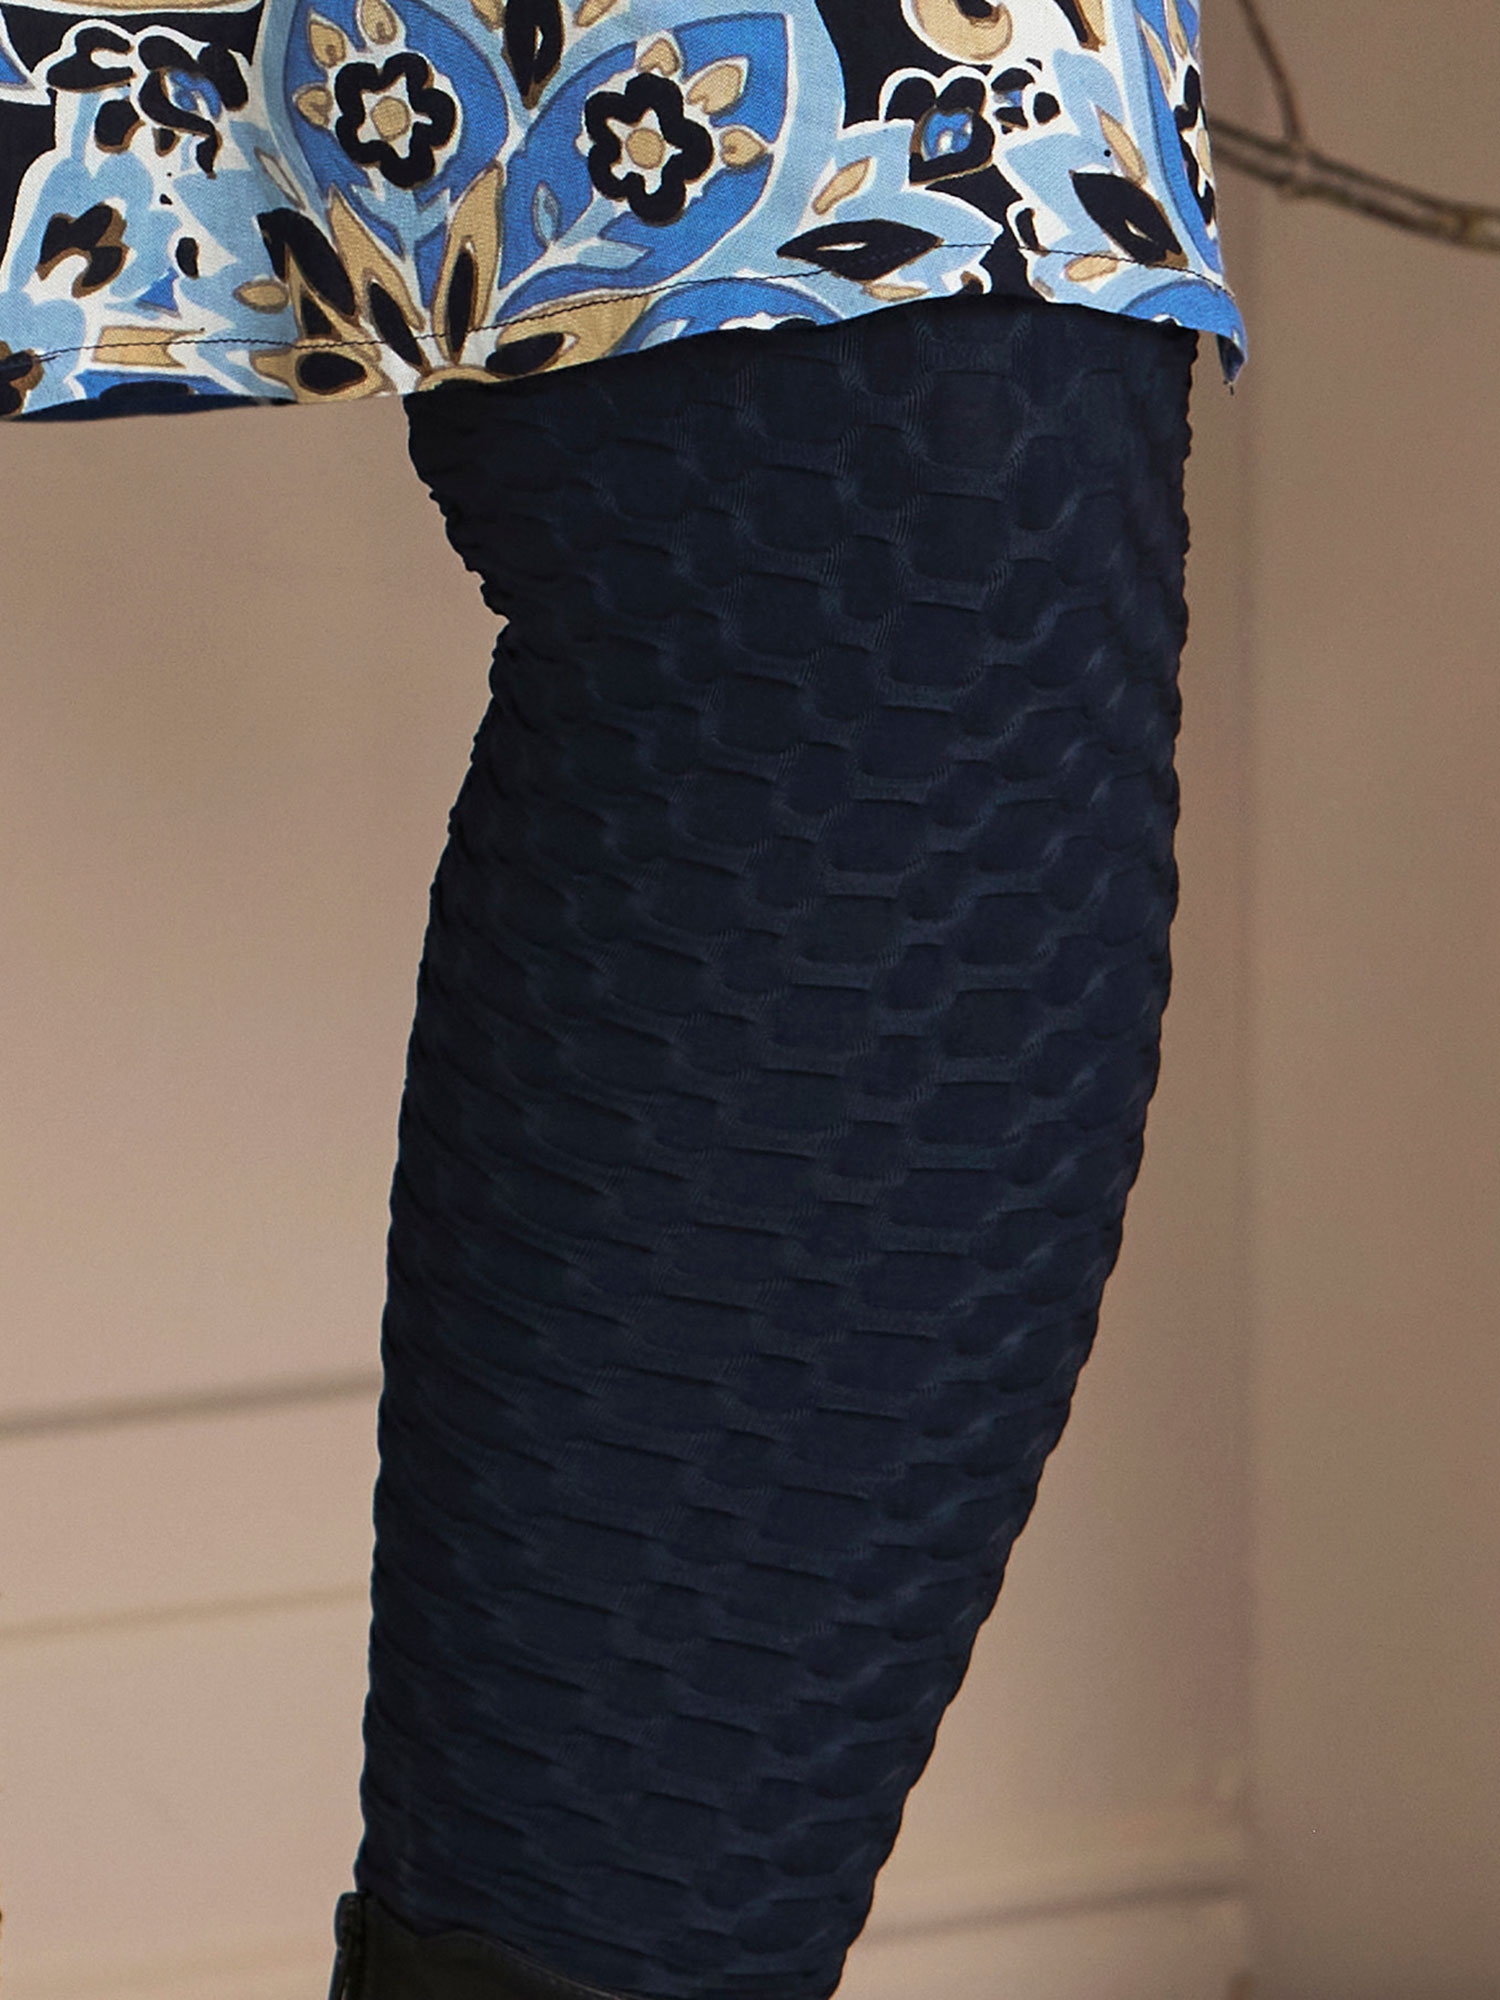 ROMY - Marinblå stretch leggings med 3D-struktur fra Zhenzi